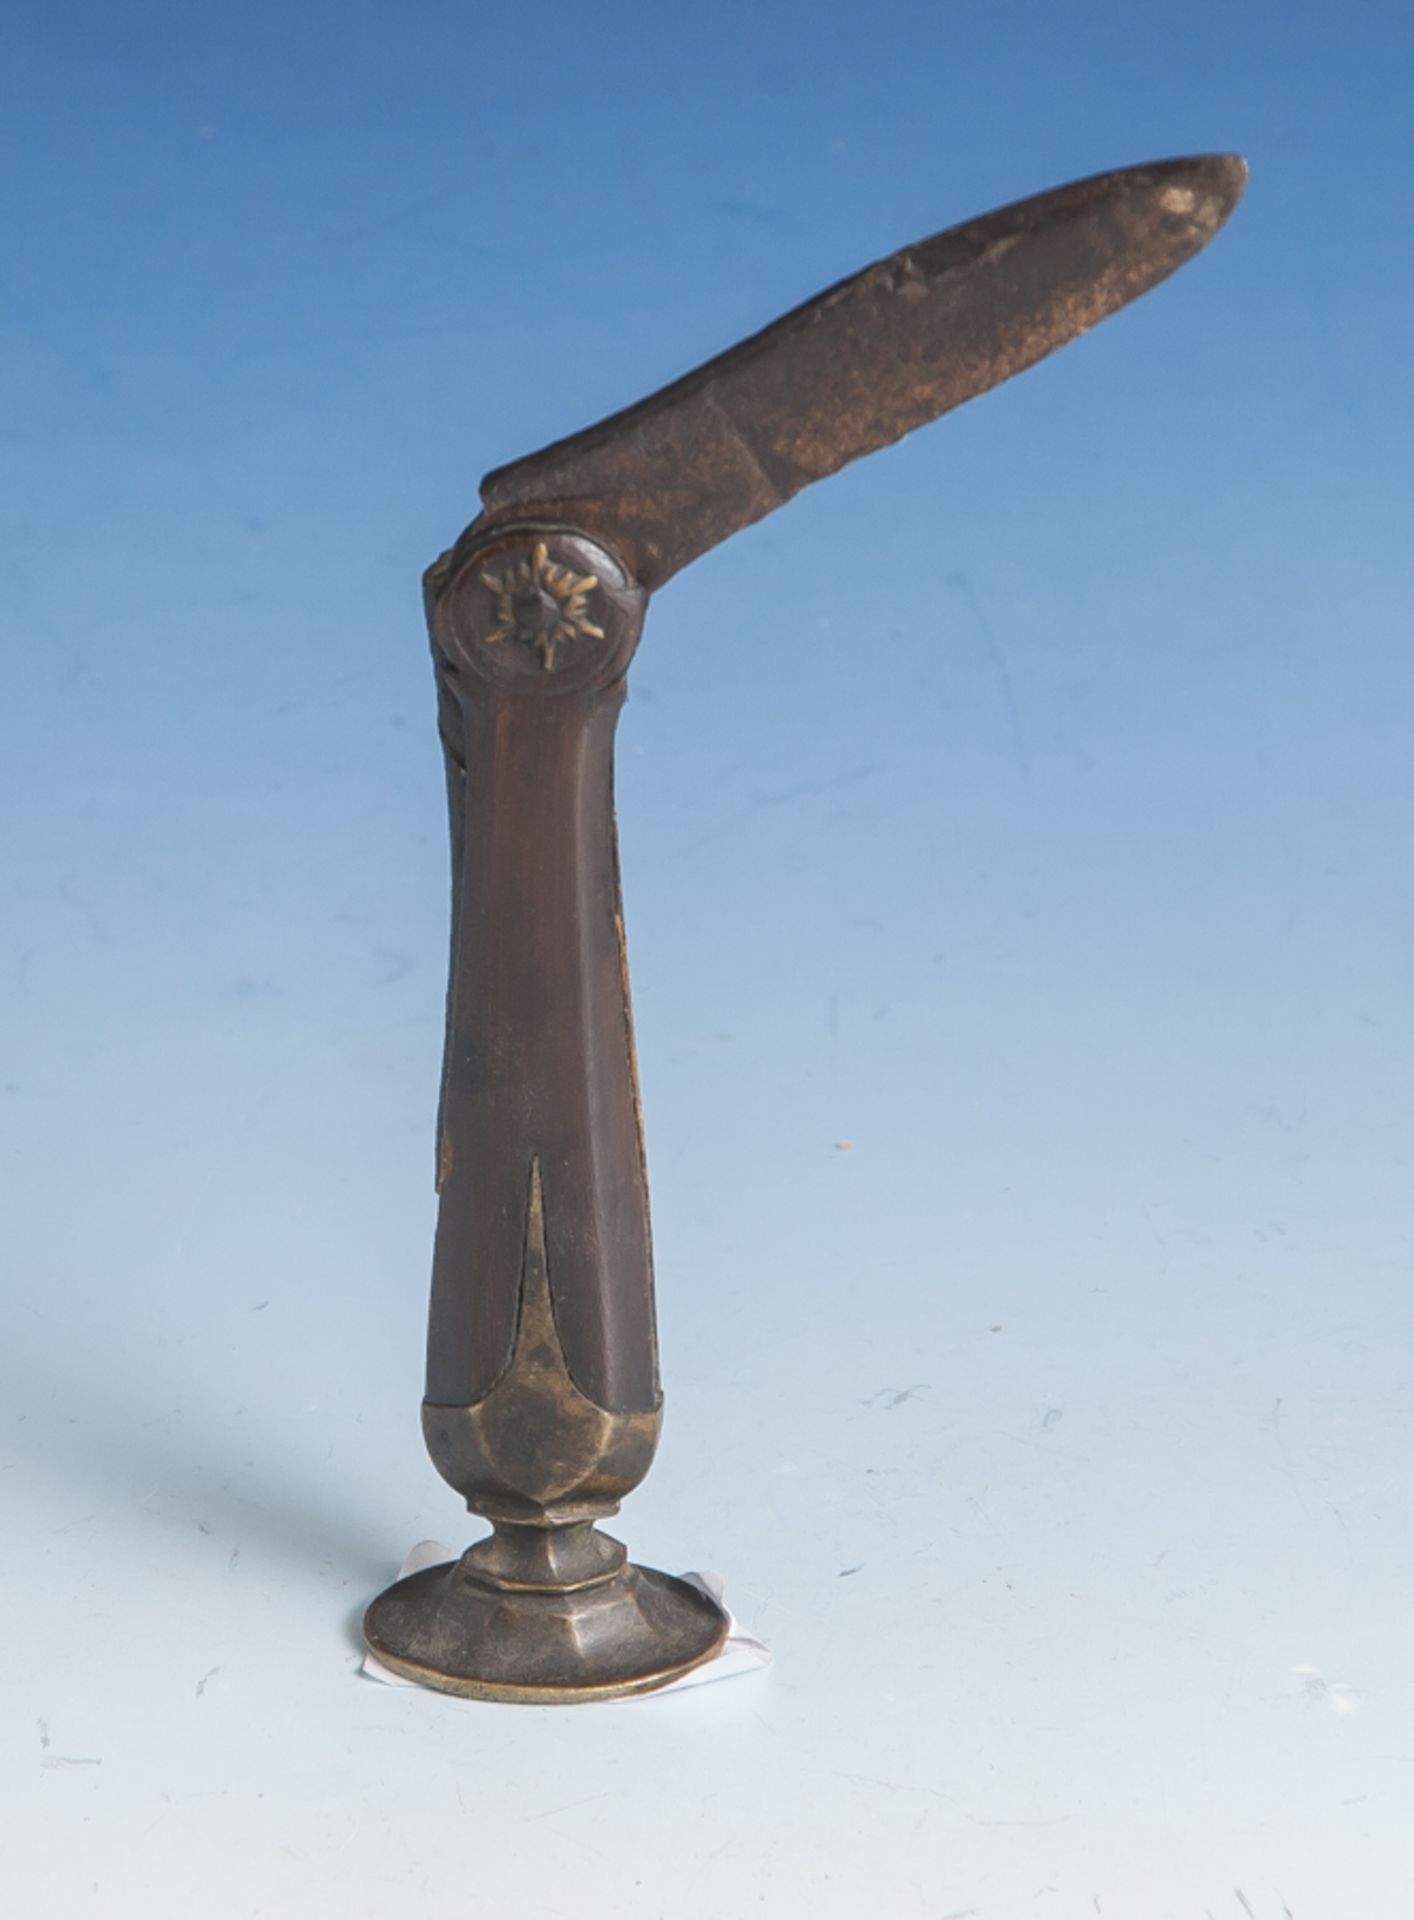 Kleines Messer mit Stampfer für Pfeifenraucher, spätes 18./frühes 19. Jahrh. H. ca. 9 cm. - Bild 2 aus 2